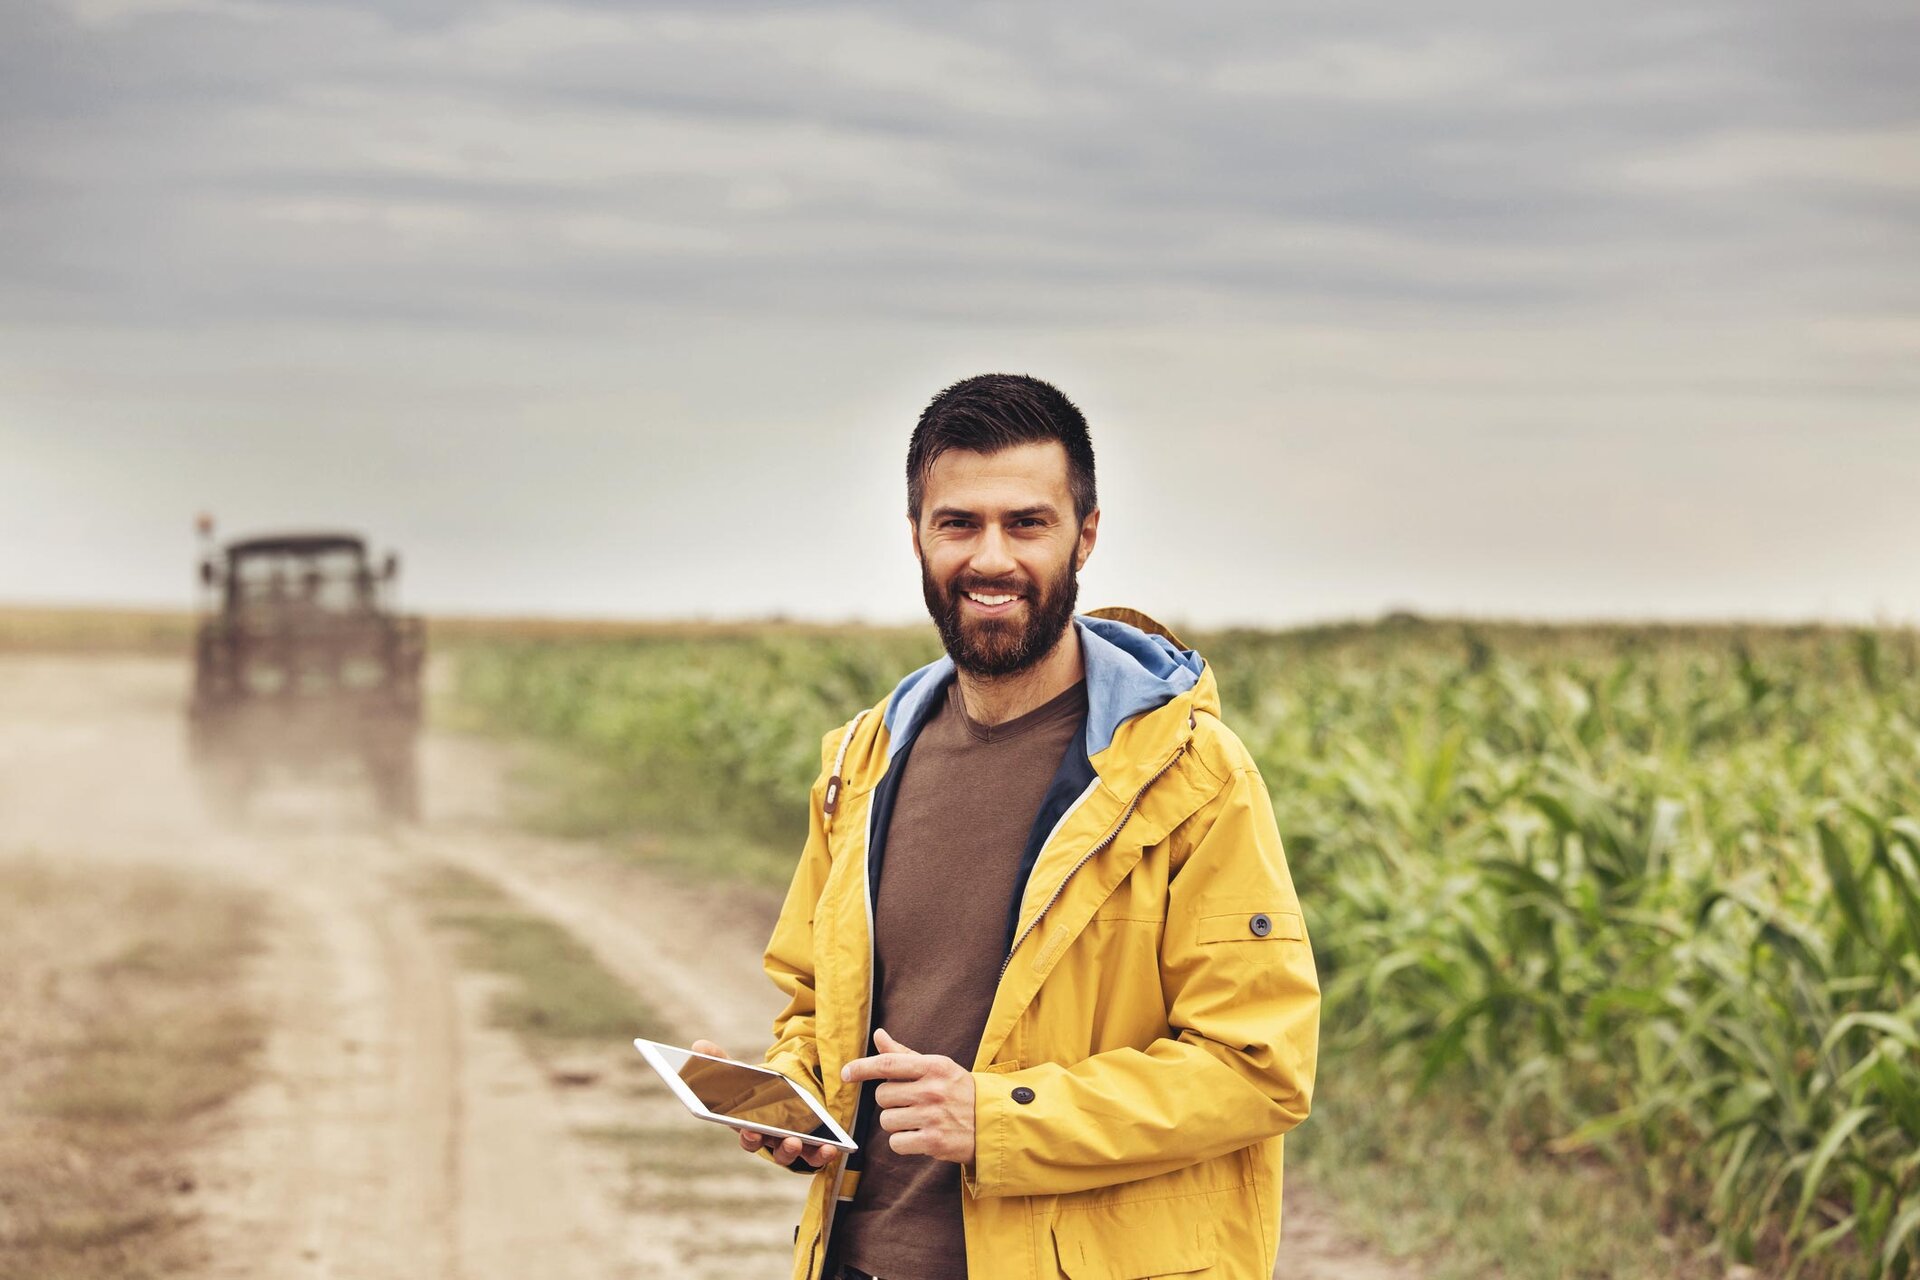 Mann mit Tablet vor einem Maisfeld und einem Traktor